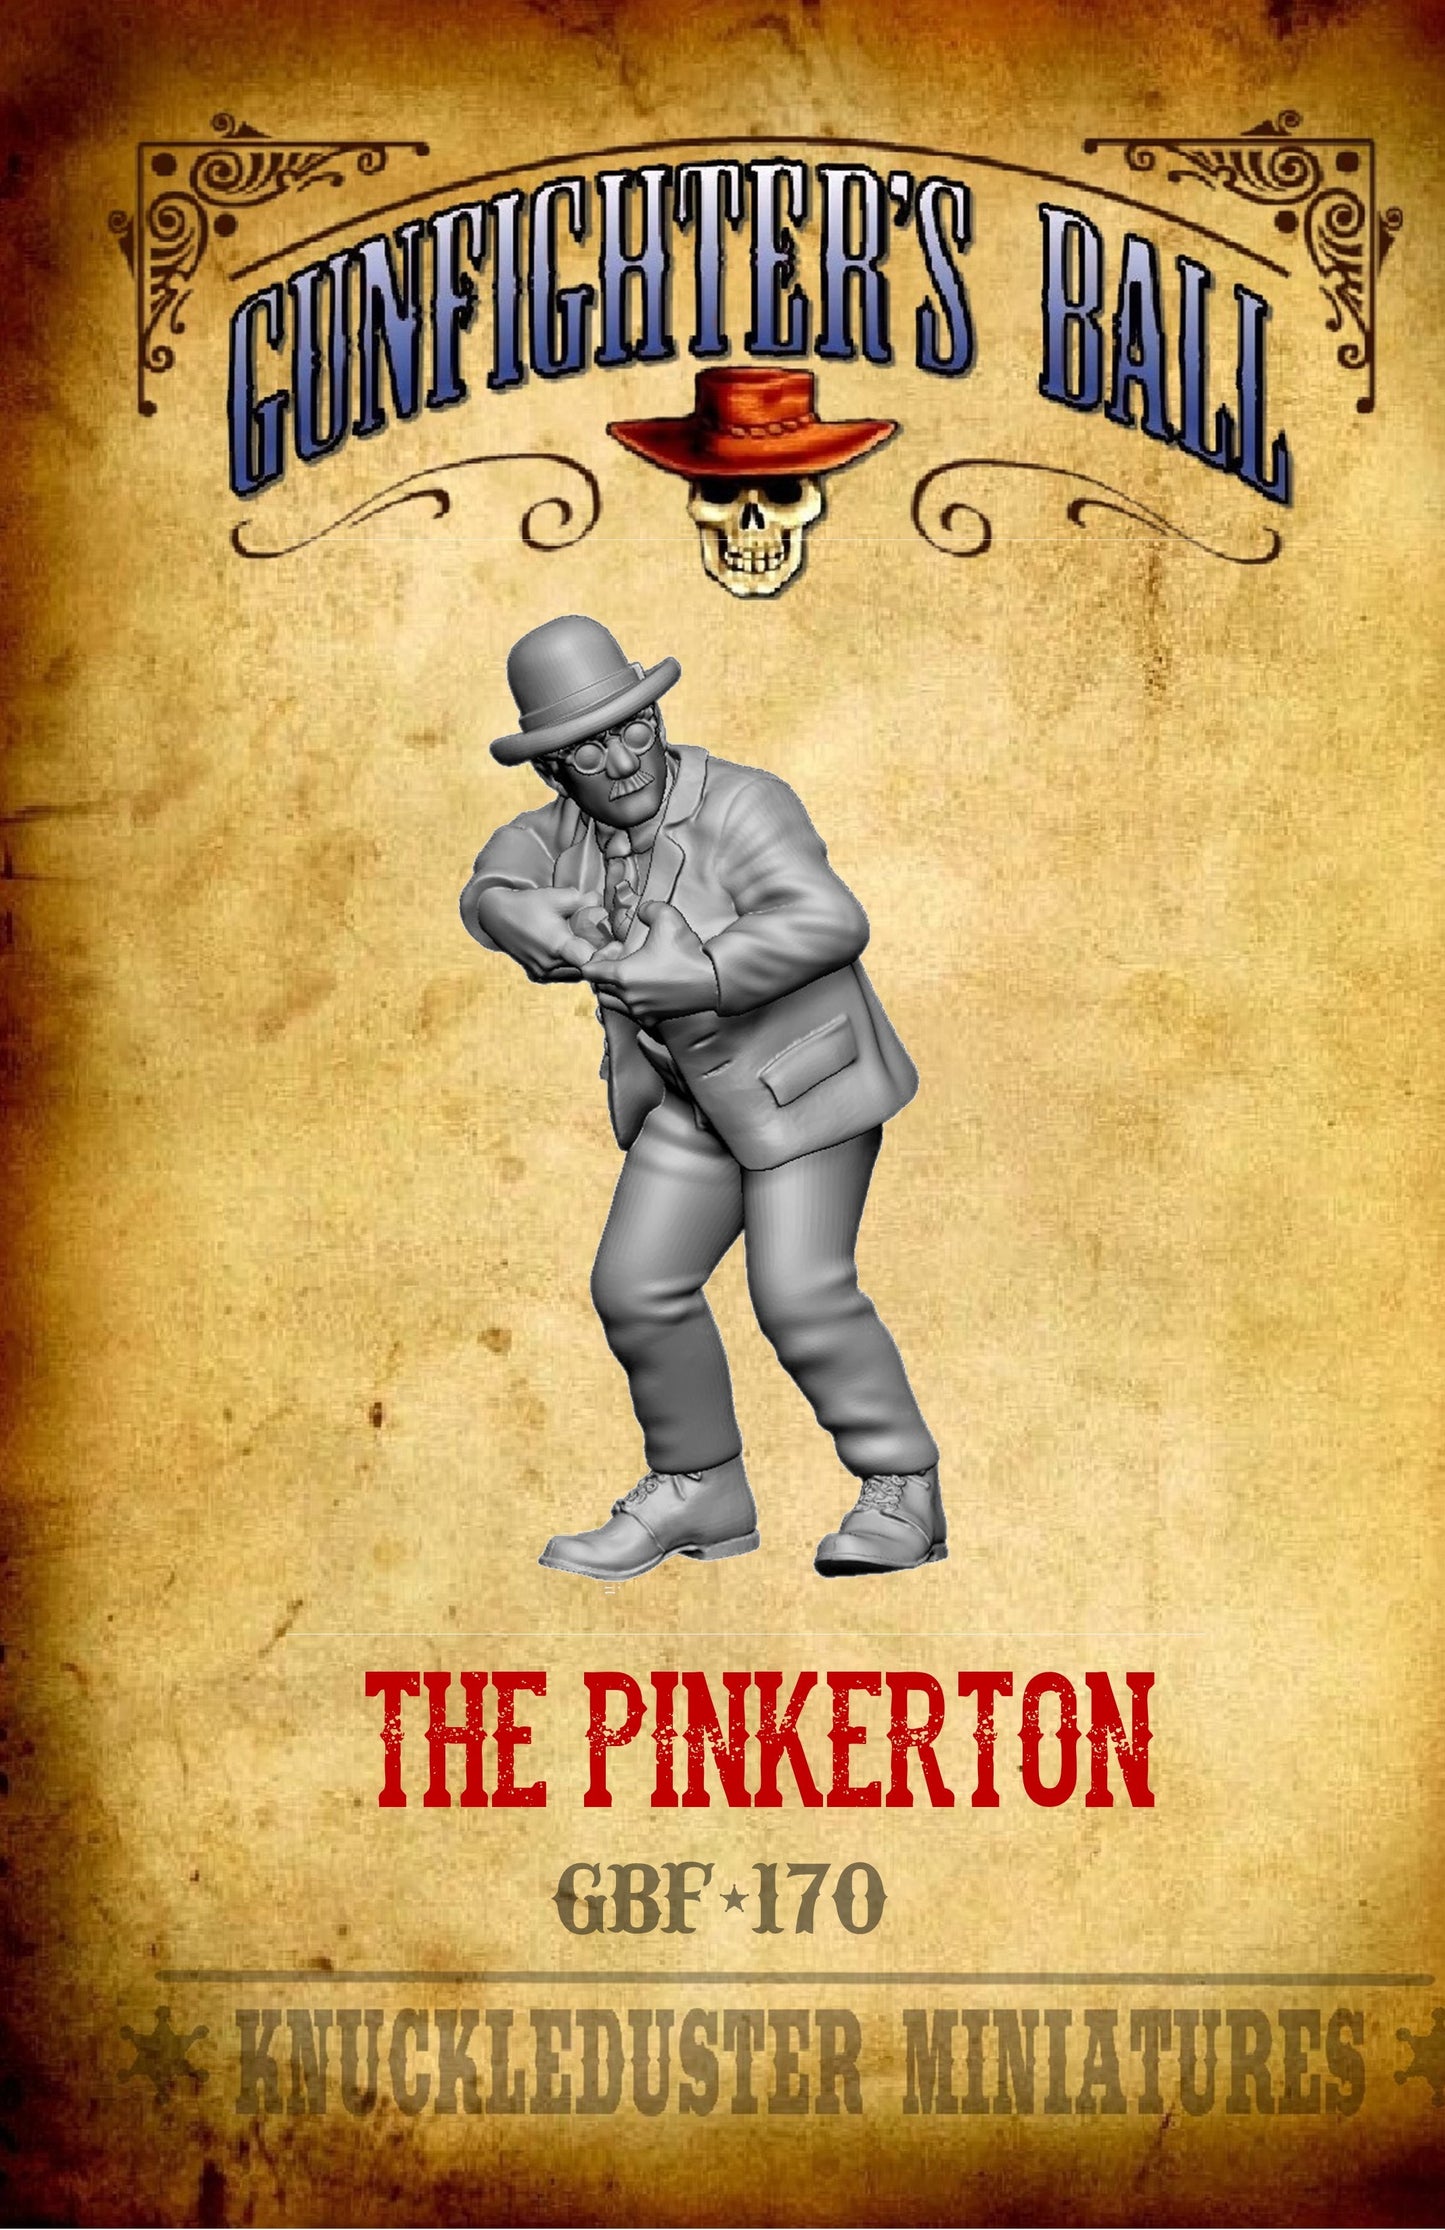 The Pinkerton